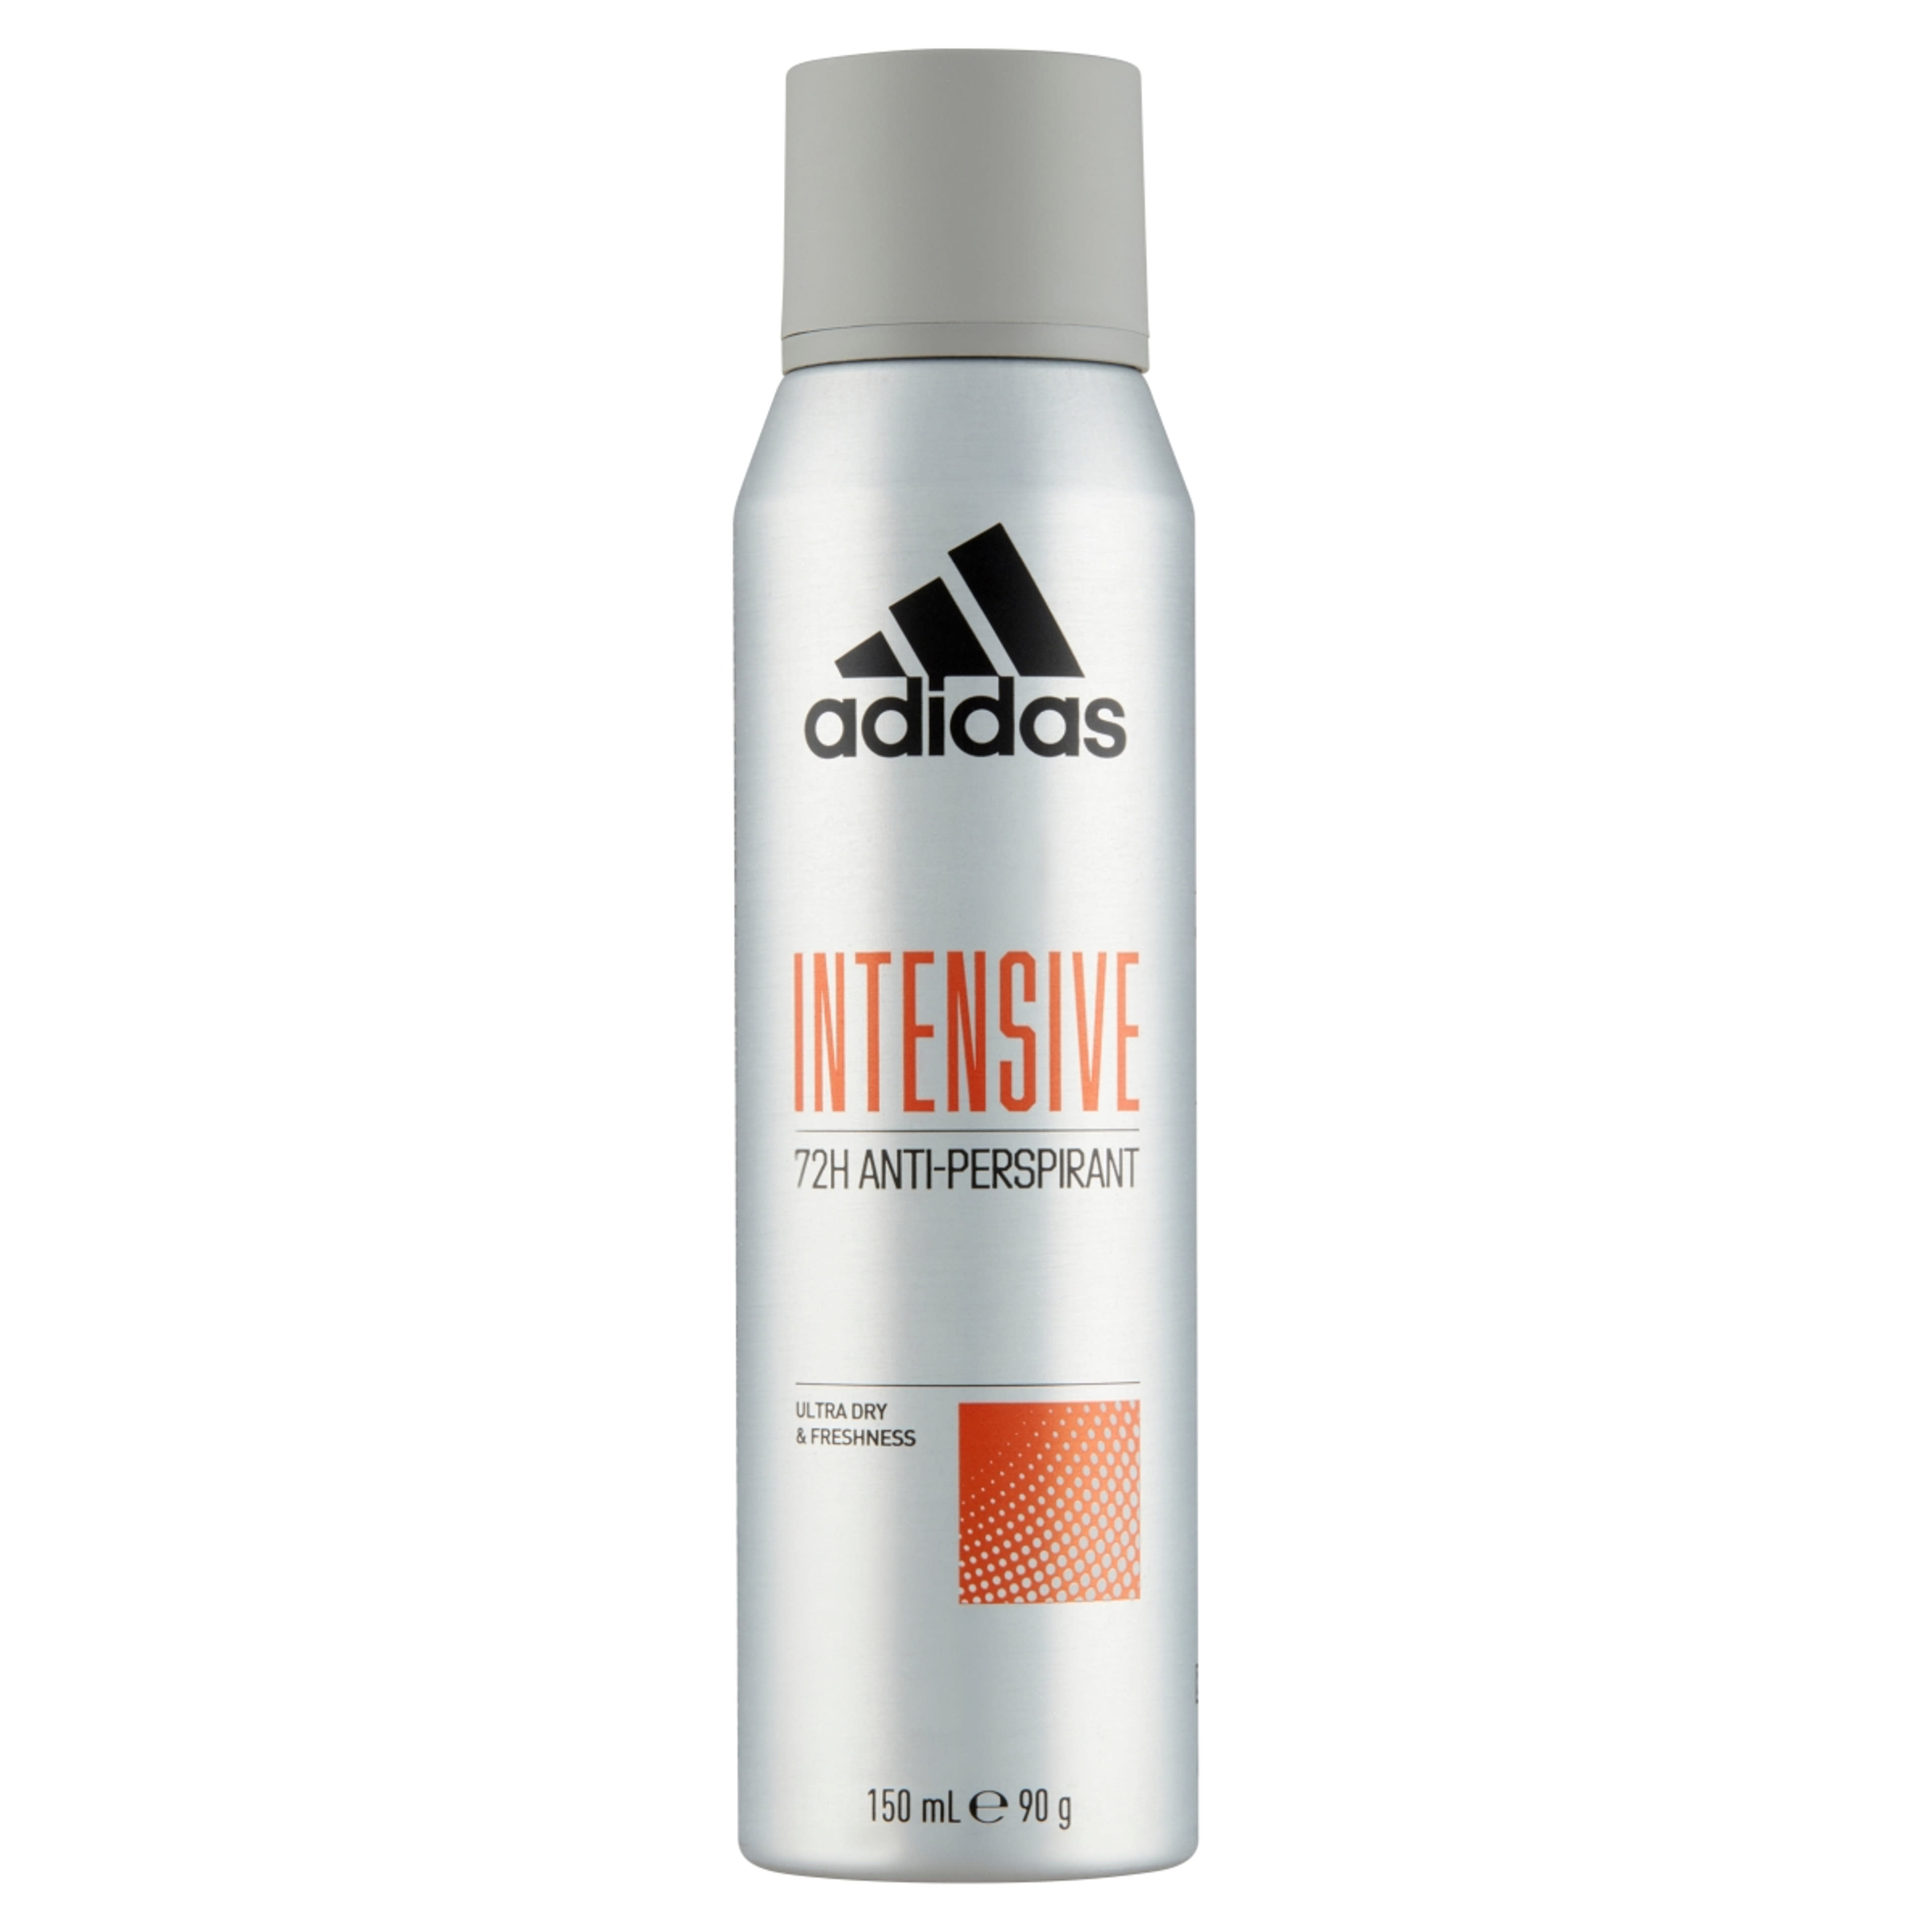 Adidas Intensive férfi izzadásgátló dezodor - 150 ml-1